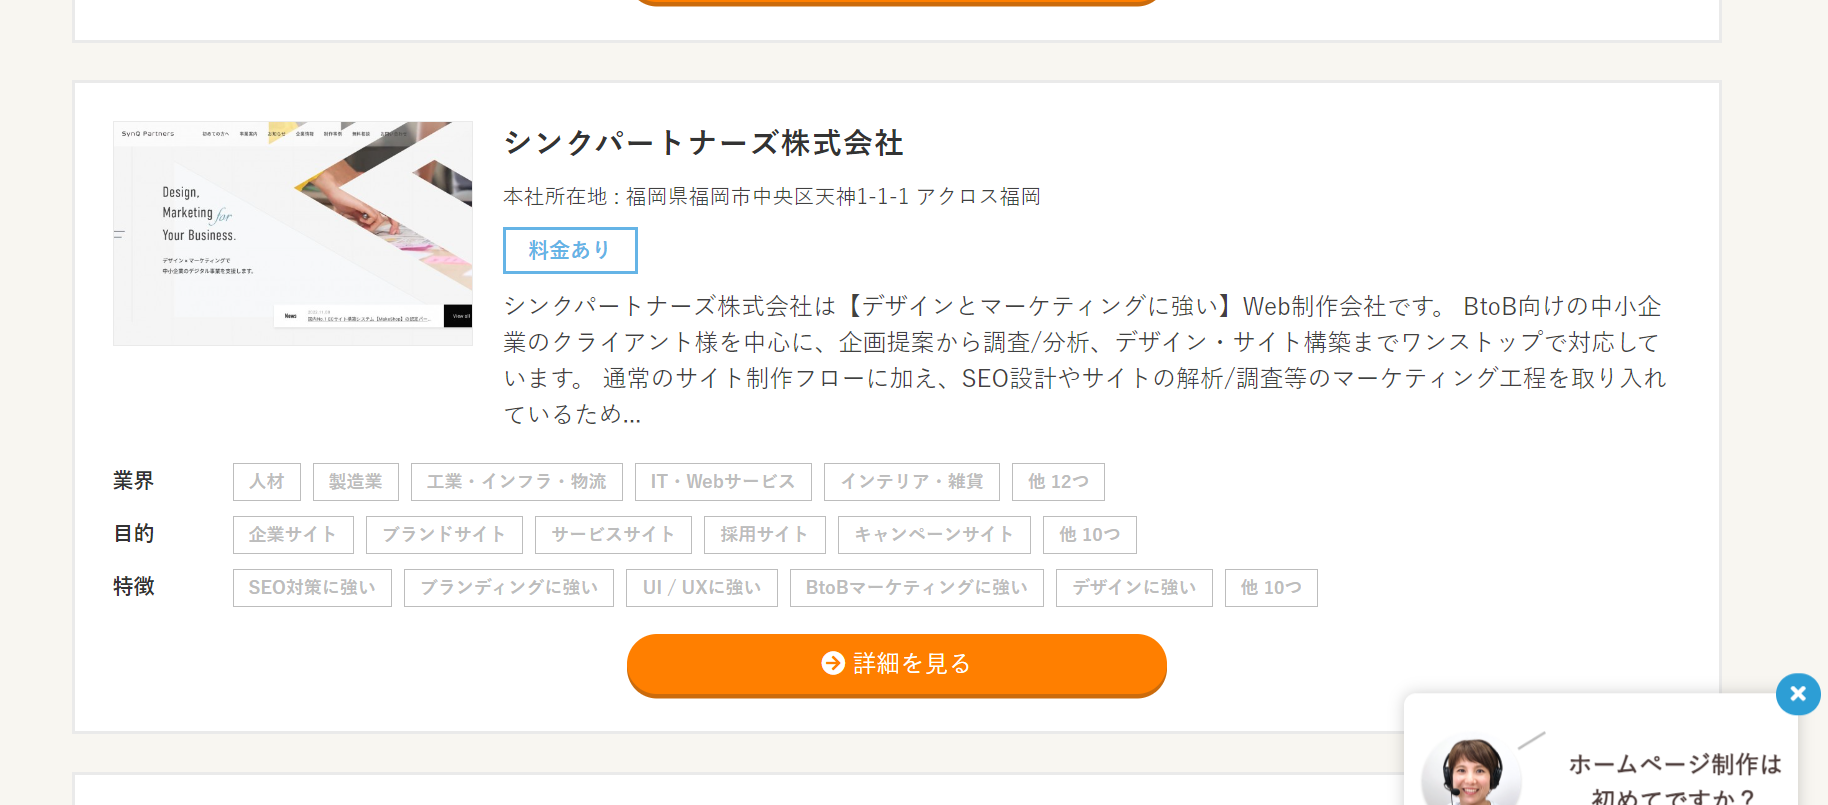 福岡県で「SEO対策に強い」ホームページ制作会社として掲載されました